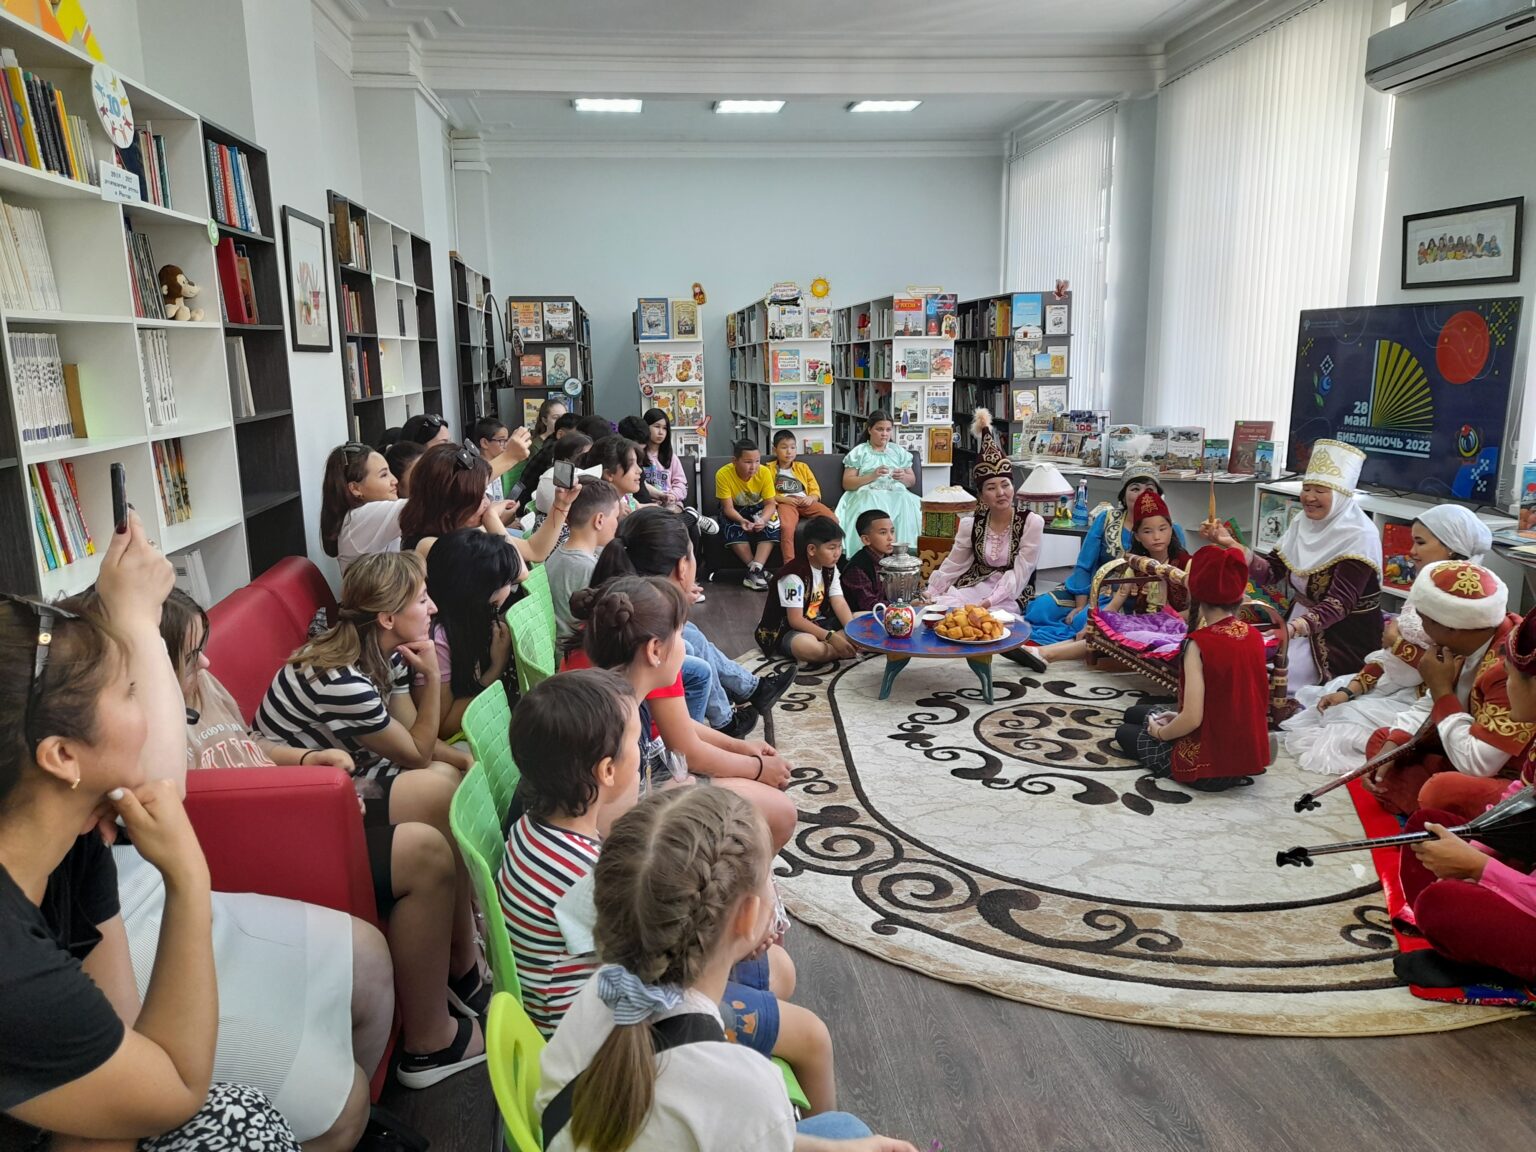 Библиотеке исполнился год. Астраханская областная детская библиотека. Туризм в библиотеке. Литературный фестиваль Астрахань 2022. Библиотека 10.